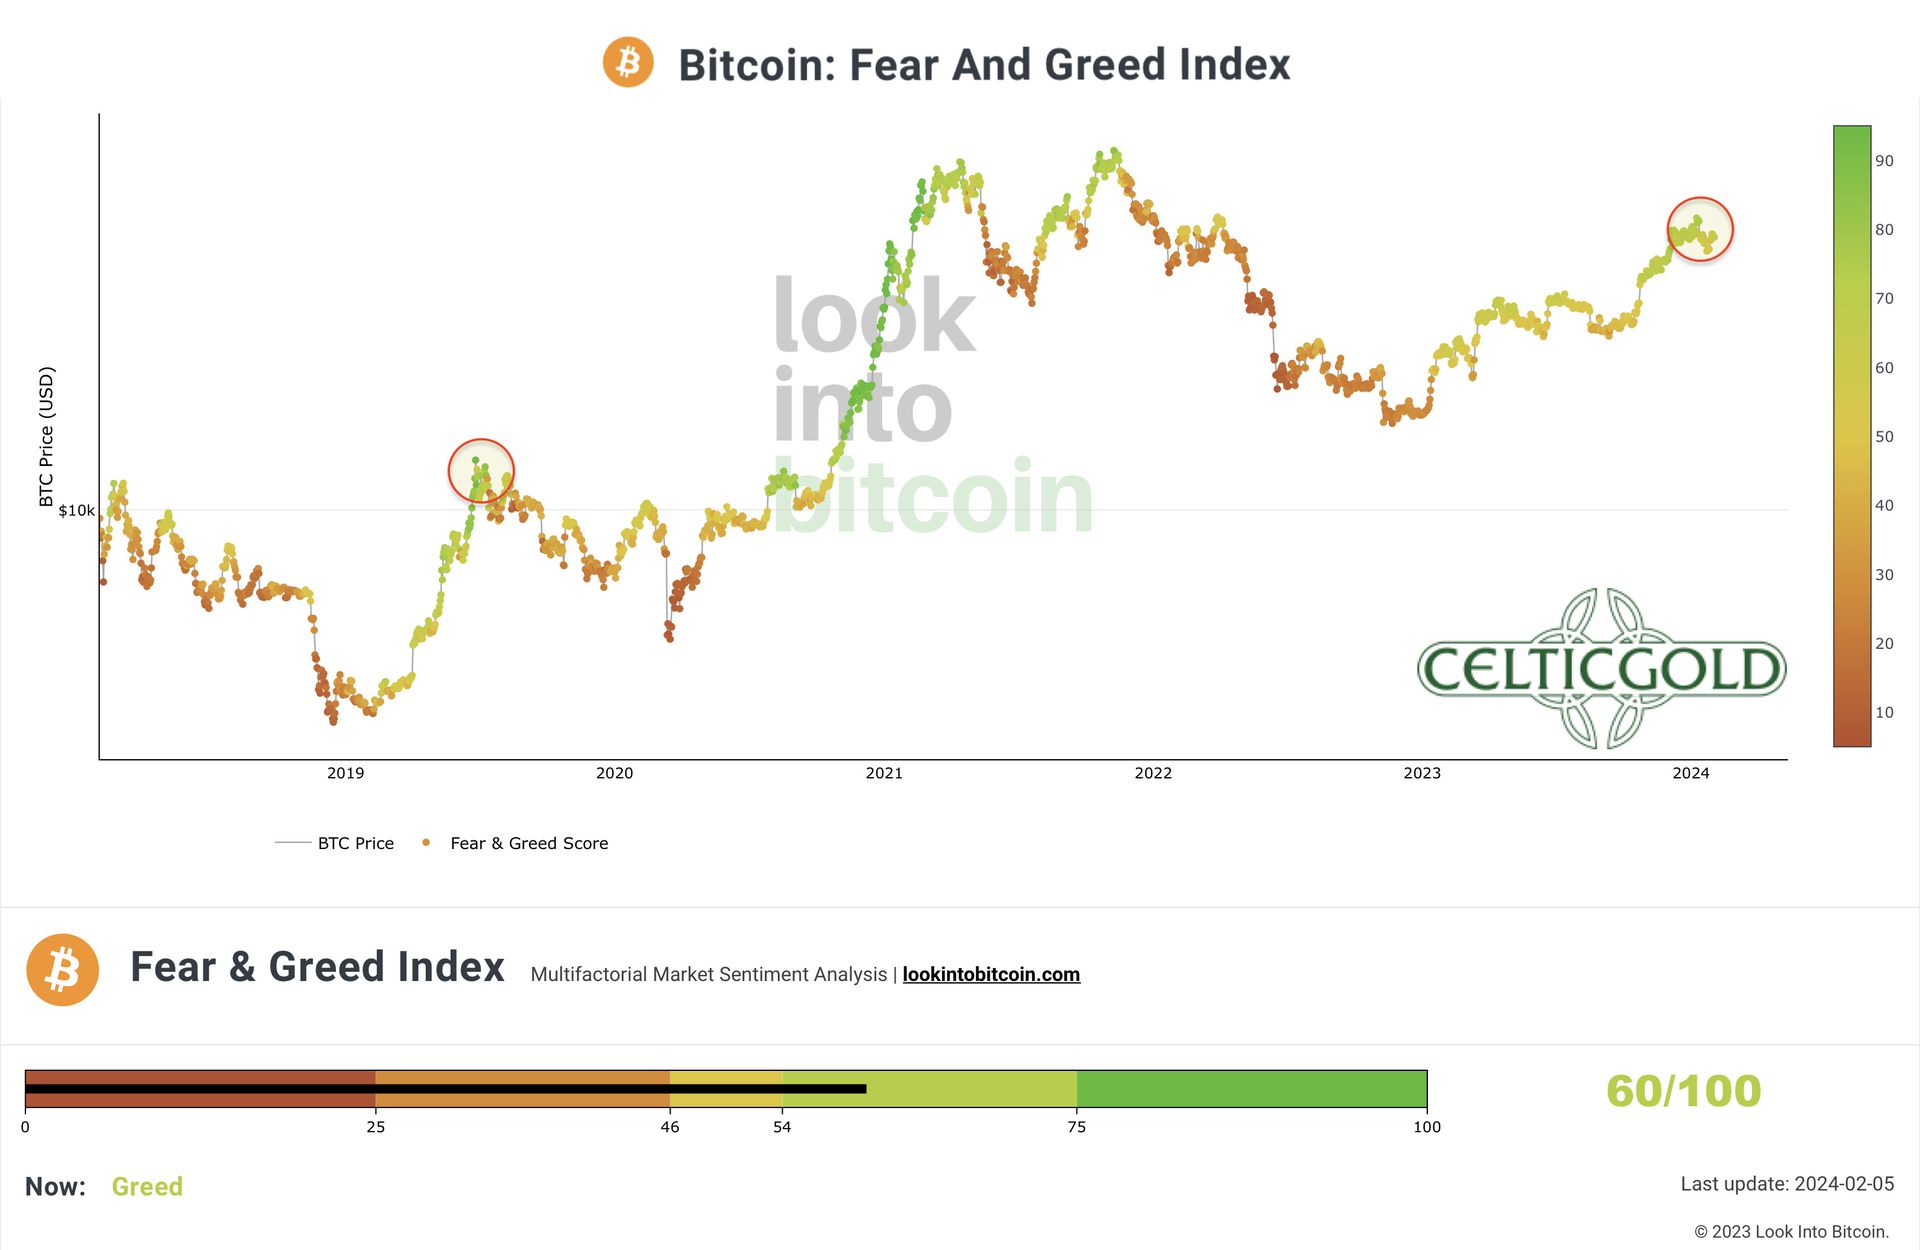 Ein Bitcoin-Preisdiagramm gekoppelt mit dem Fear and Greed Index, zeigt Preisänderungen und Marktstimmung von 2019 bis 2024, mit aktuellen Gier-Werten.